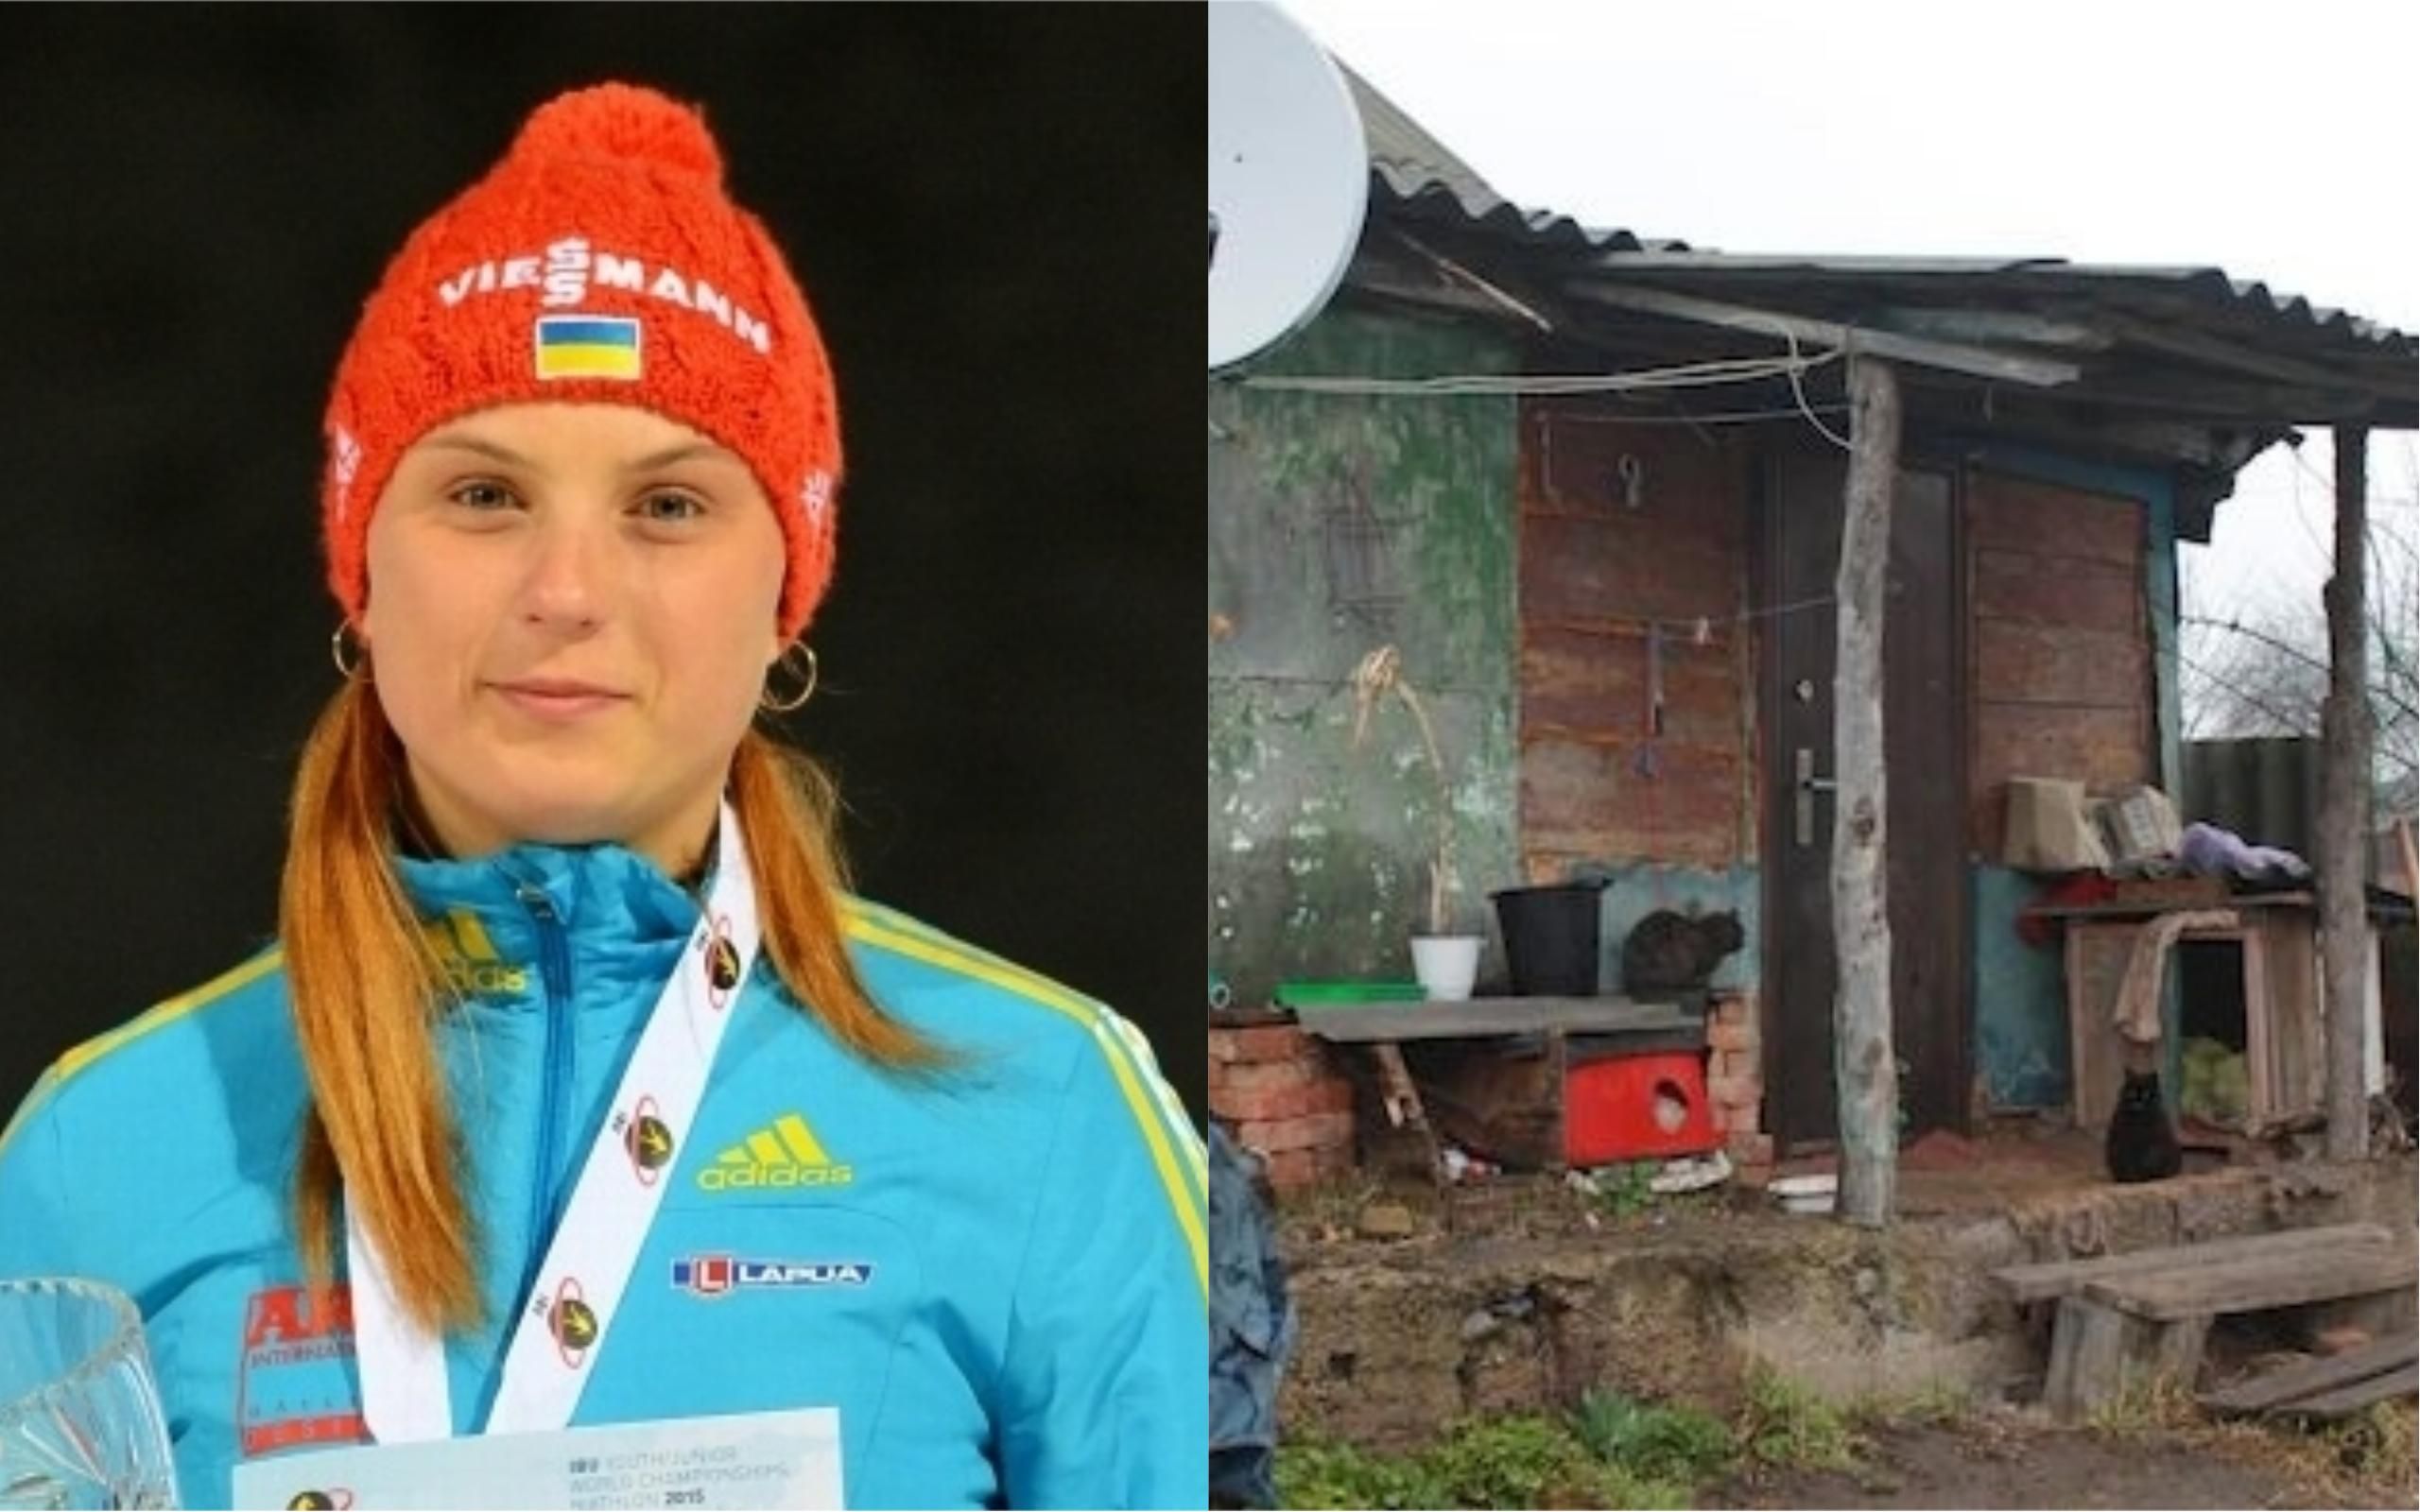 Скандал вокруг жилья украинской чемпионки мира по биатлону: появилась реакция Министерства спорта